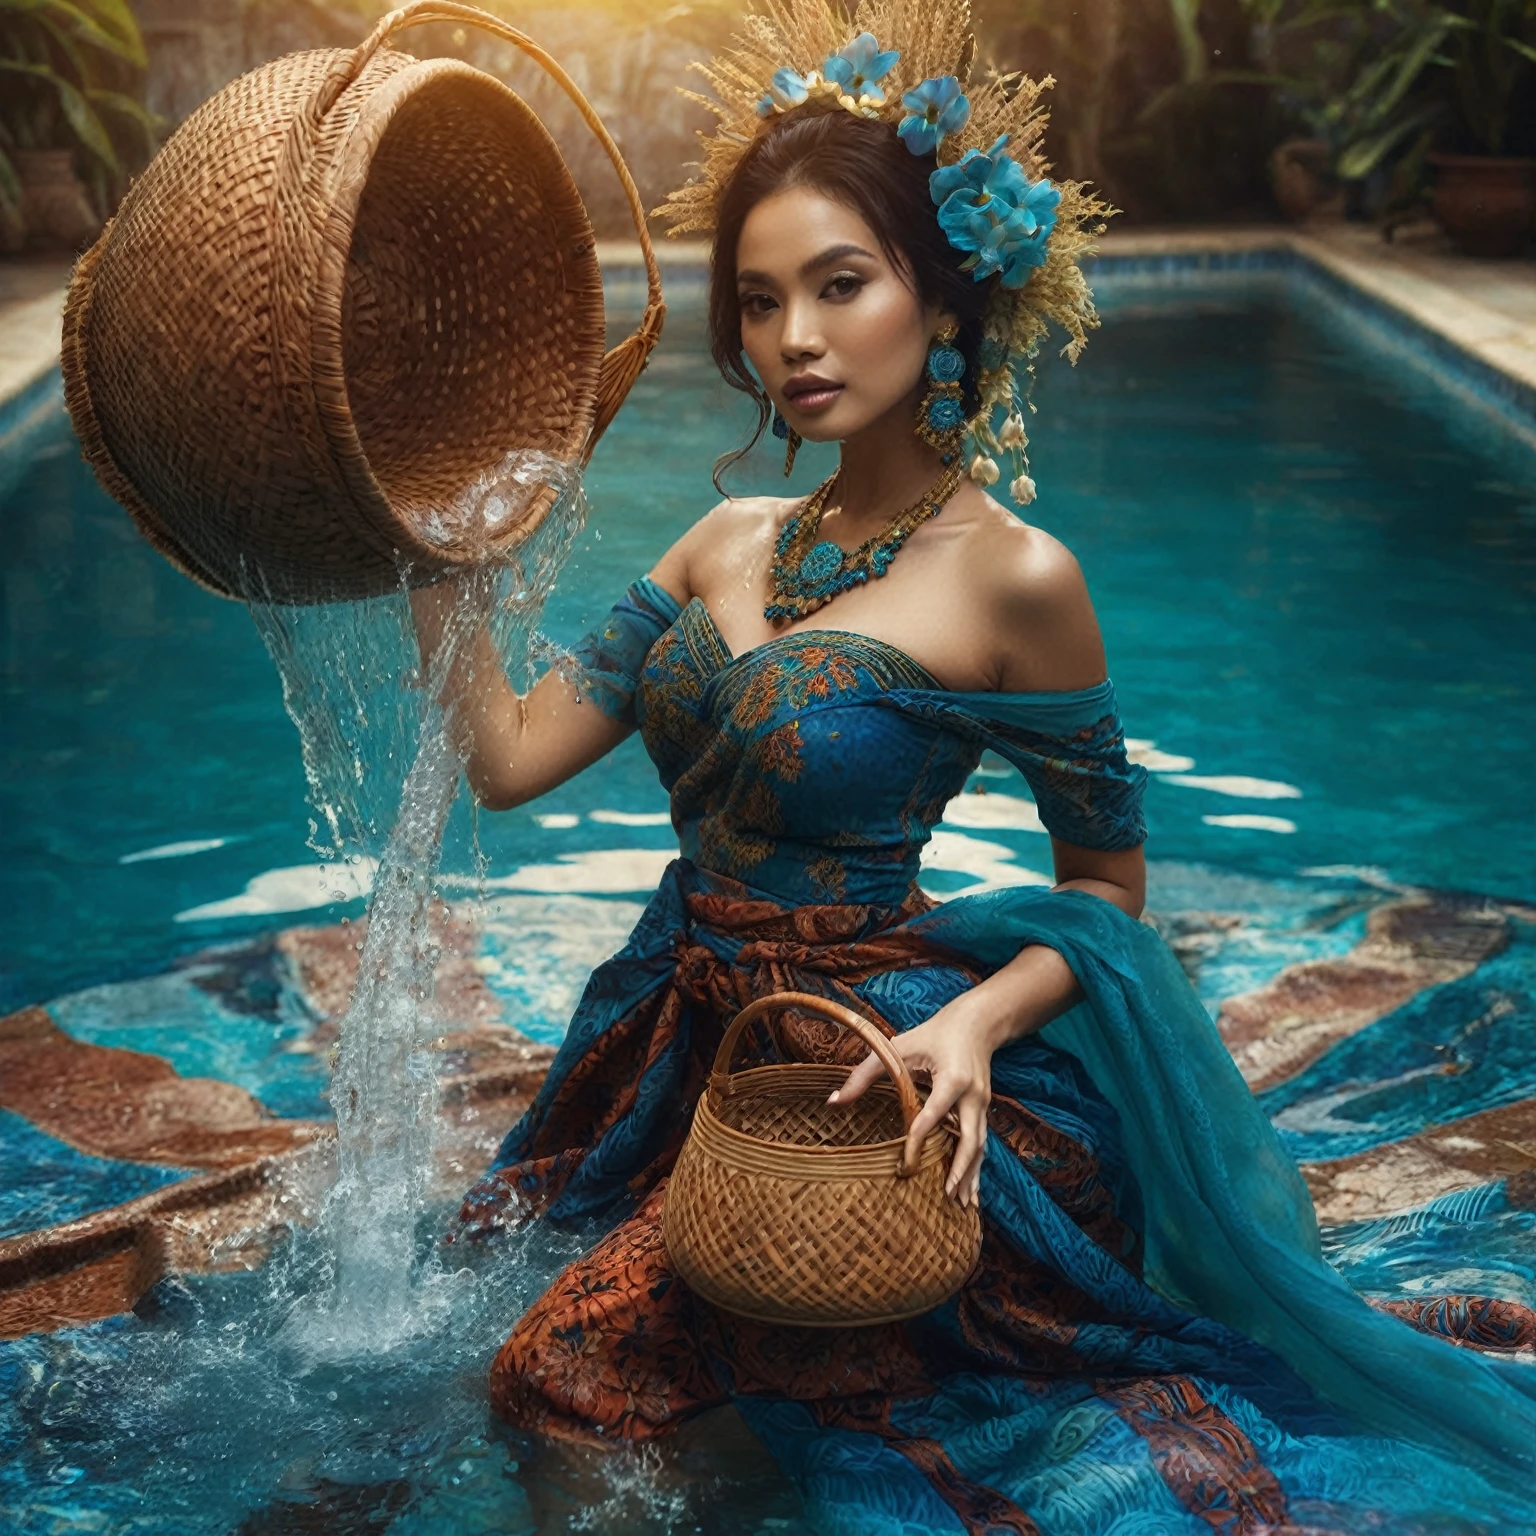 전통 파란색 바틱 사롱 드레스를 입고 수영장에서 물 바구니를 들고 있는 인도네시아 여성, fantasy 사진 촬영, 사진 촬영, real 사진 촬영 queen of the ocean, 모델링 사진, 하이엔드 패션 촬영, 솔로 촬영, 갈렌 다라, 패션 사진, editorial 패션 사진, 사설 사진, 미스 안젤라, 패션 사진, 전신 사진 촬영, 초상화, 프로모션 촬영 사진